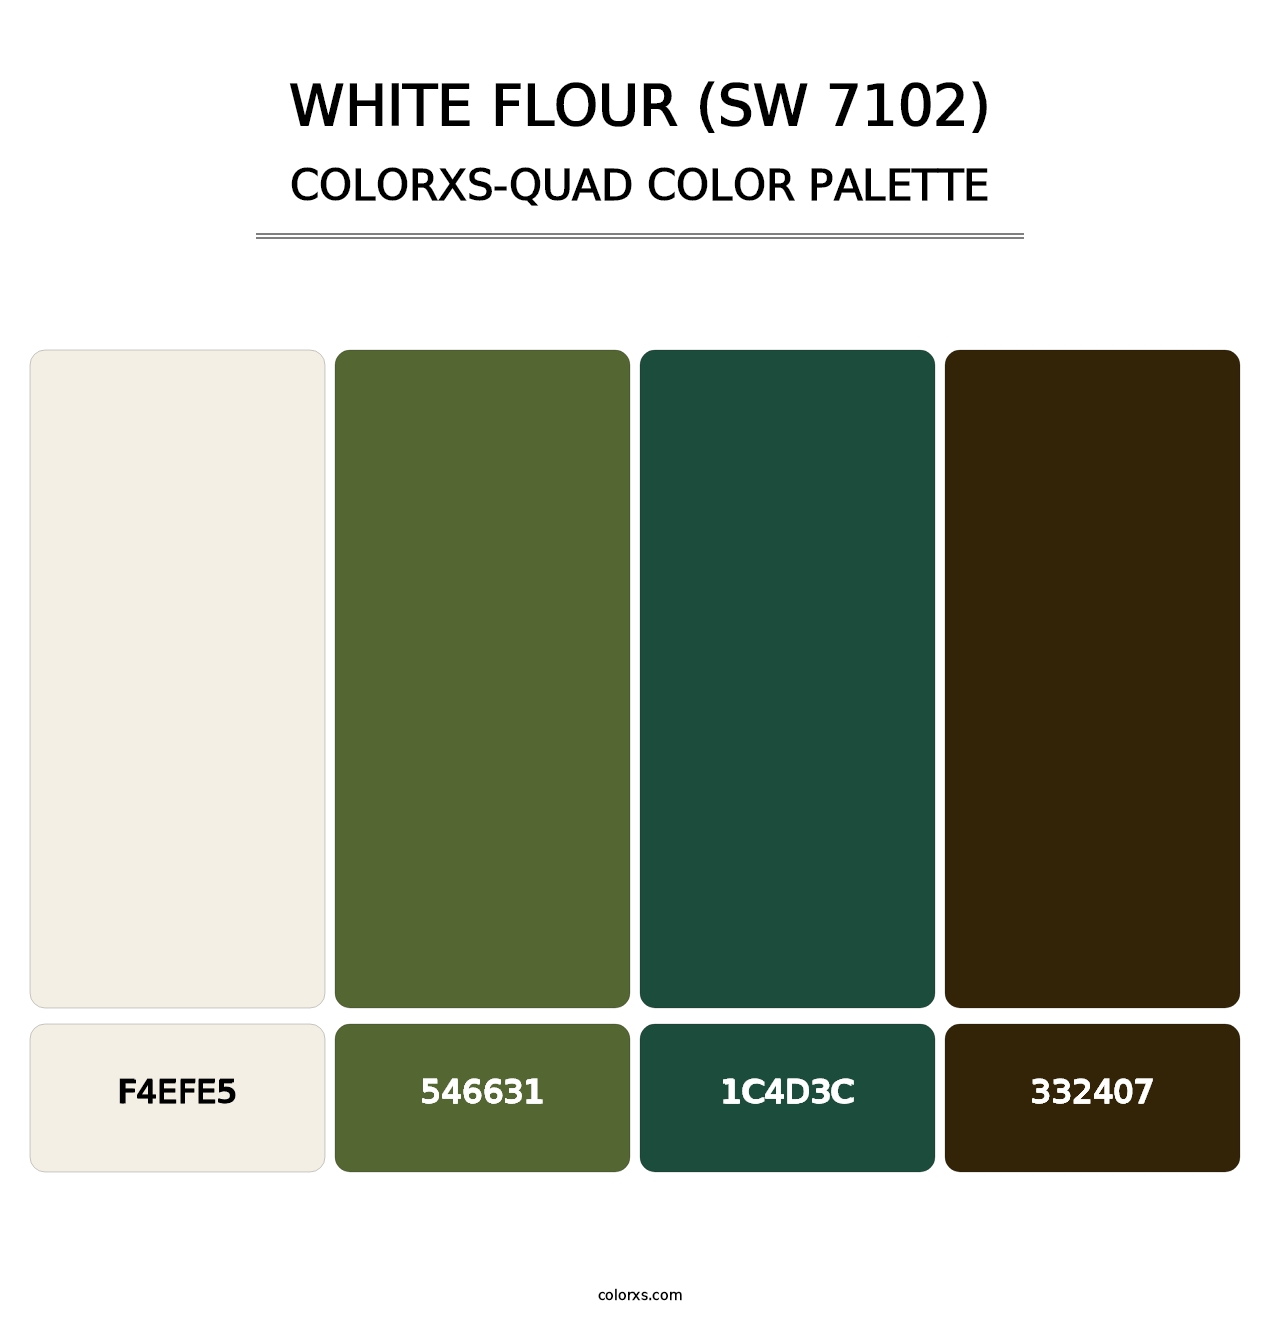 White Flour (SW 7102) - Colorxs Quad Palette